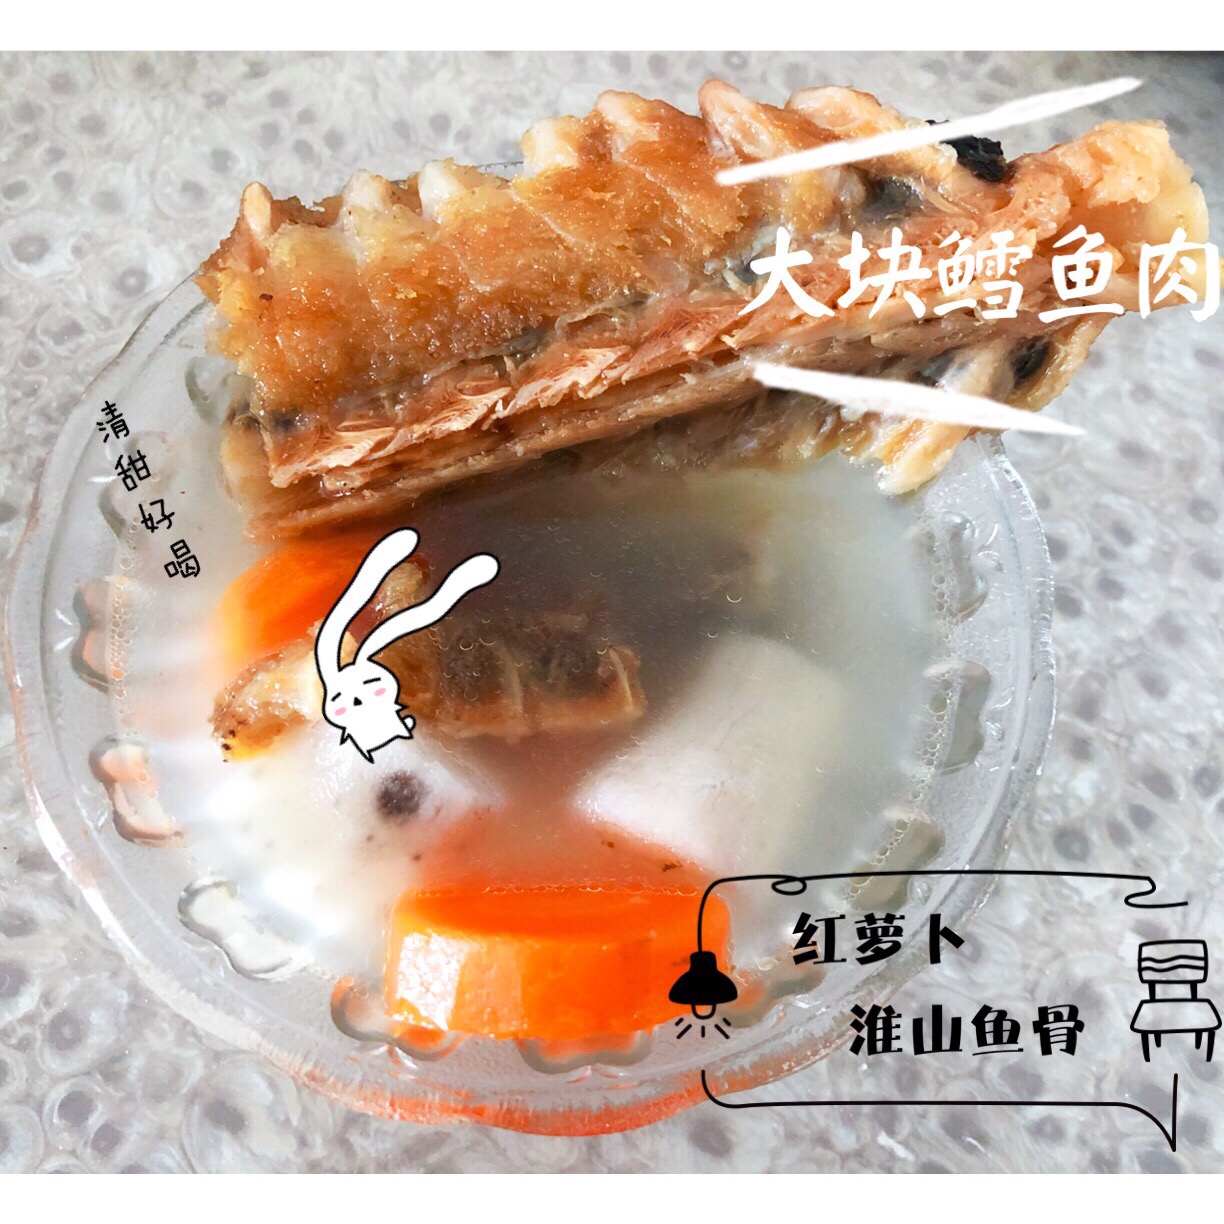 淮山红萝卜鱼骨汤